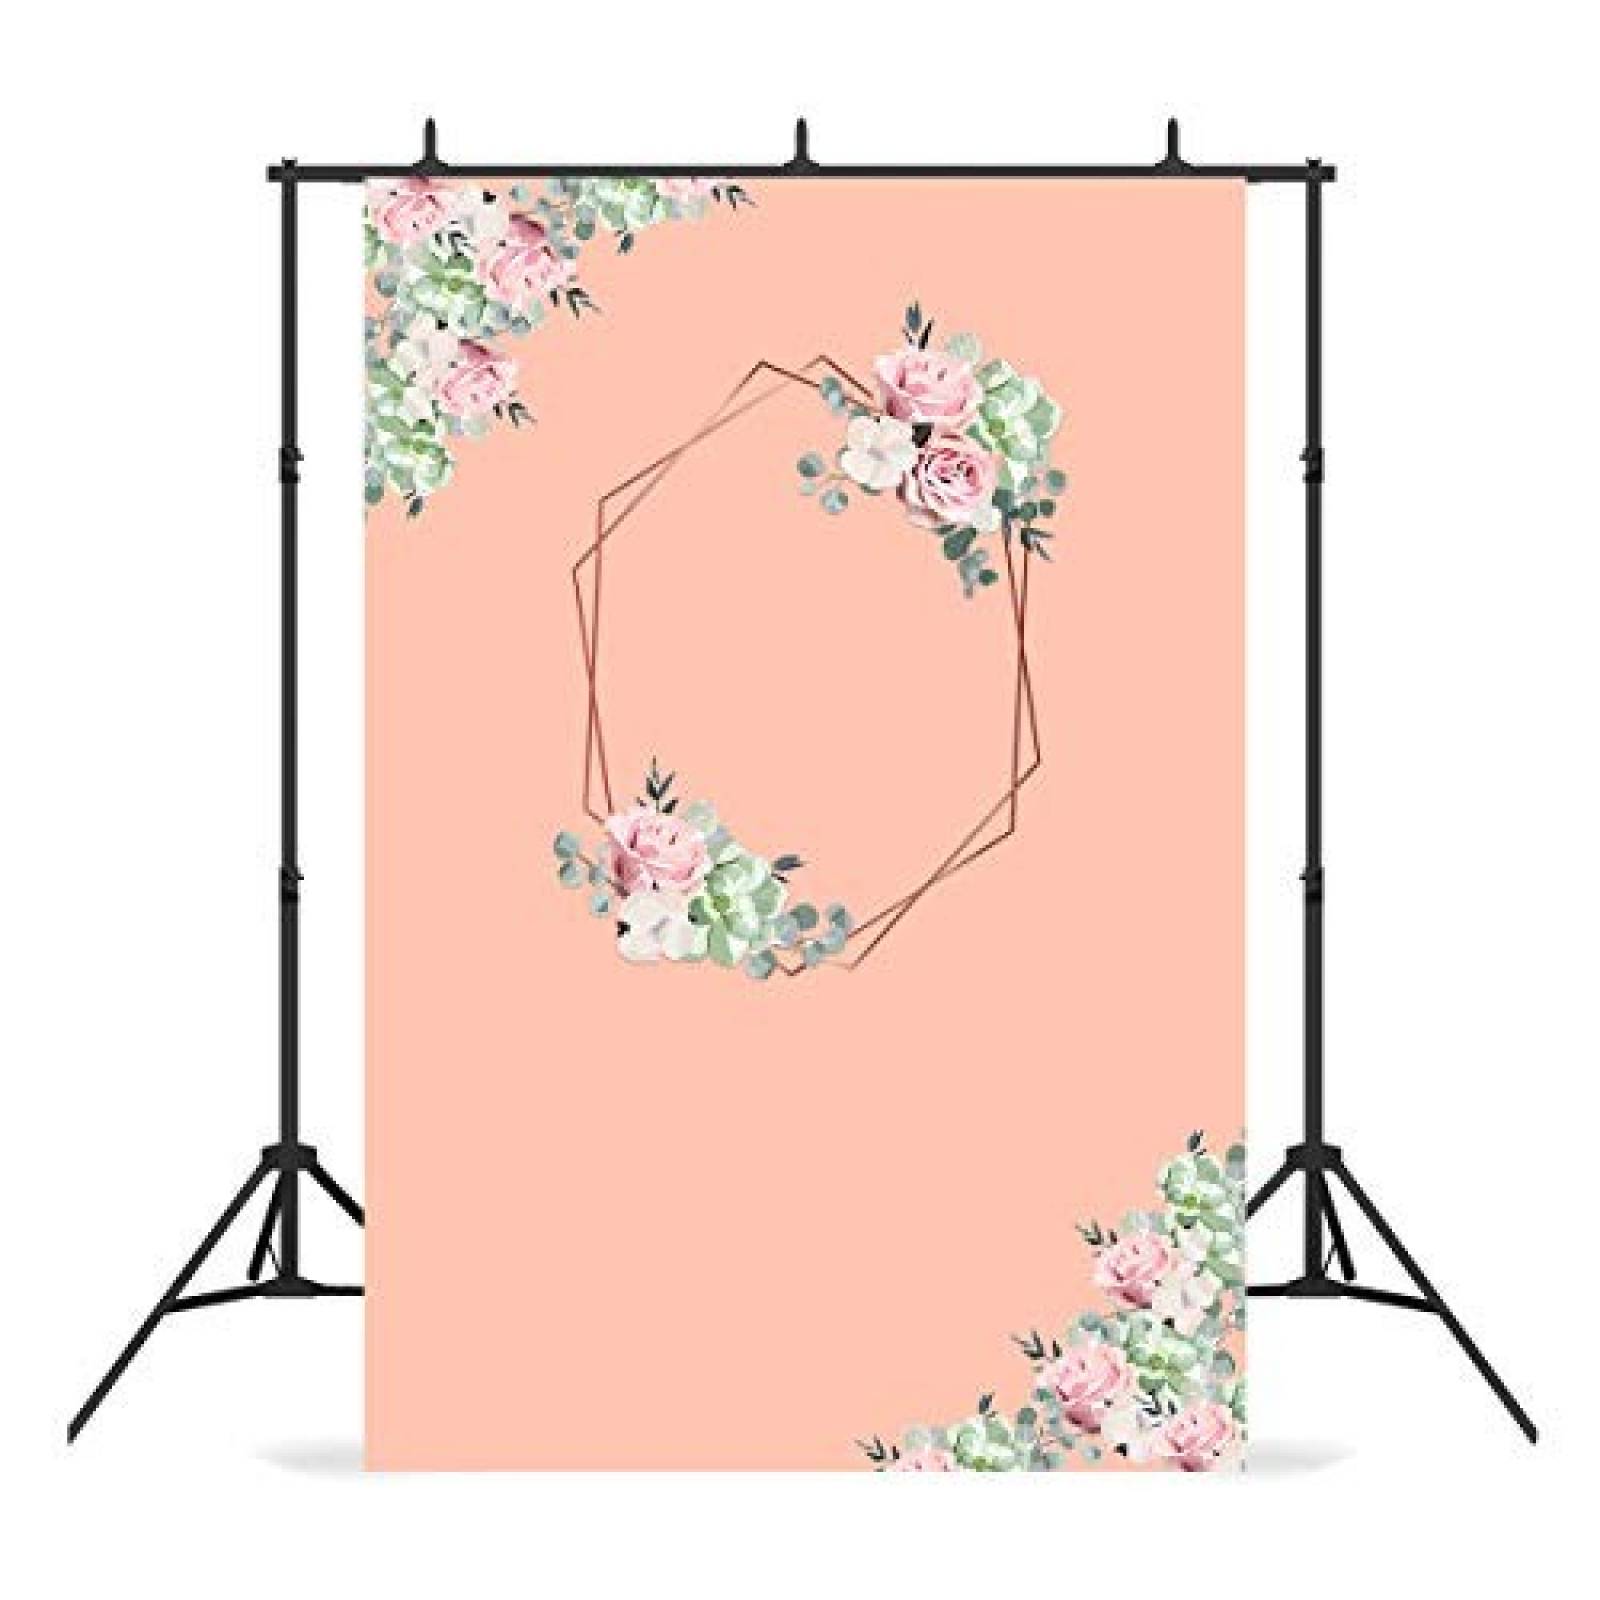 Fondo para Fotografia Fengrise 2.2x1.5m Poliester -Floral